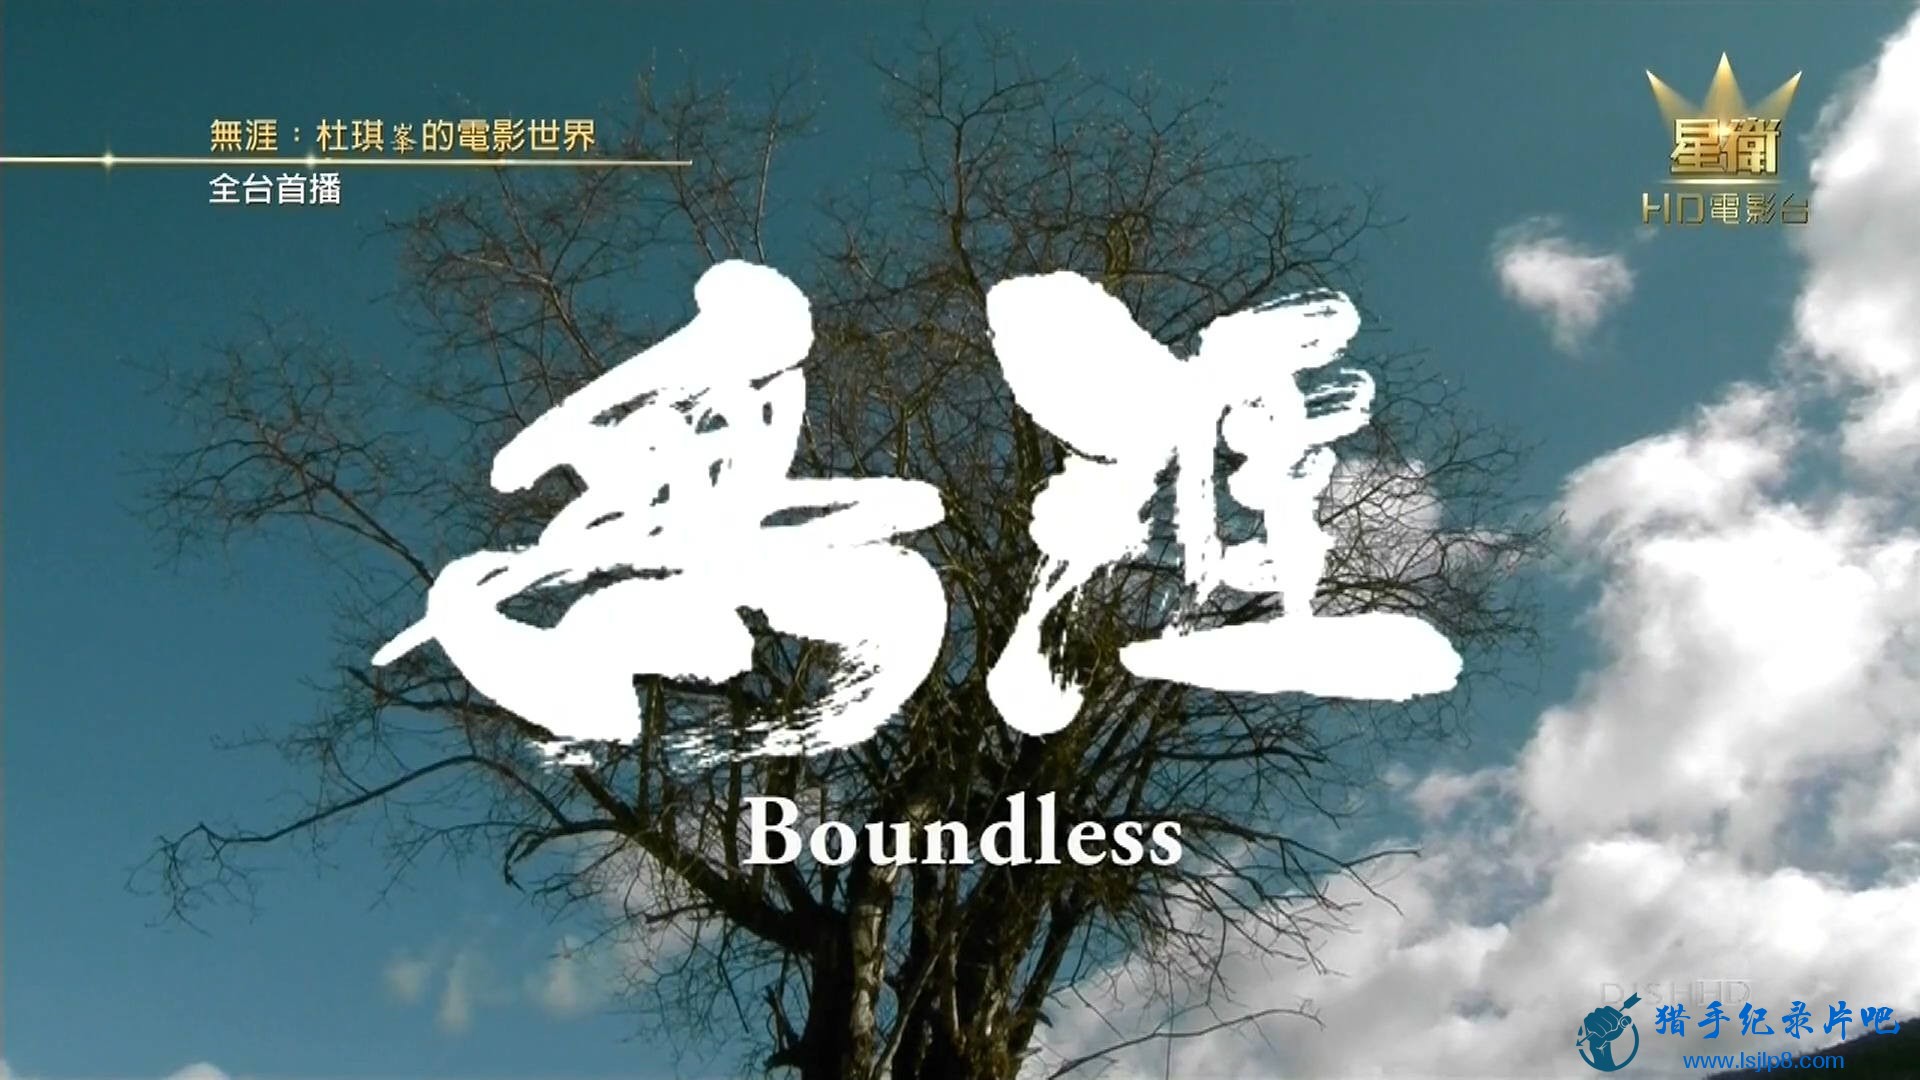 《无涯：杜琪峰的电影世界》Boundless.2013.jpg